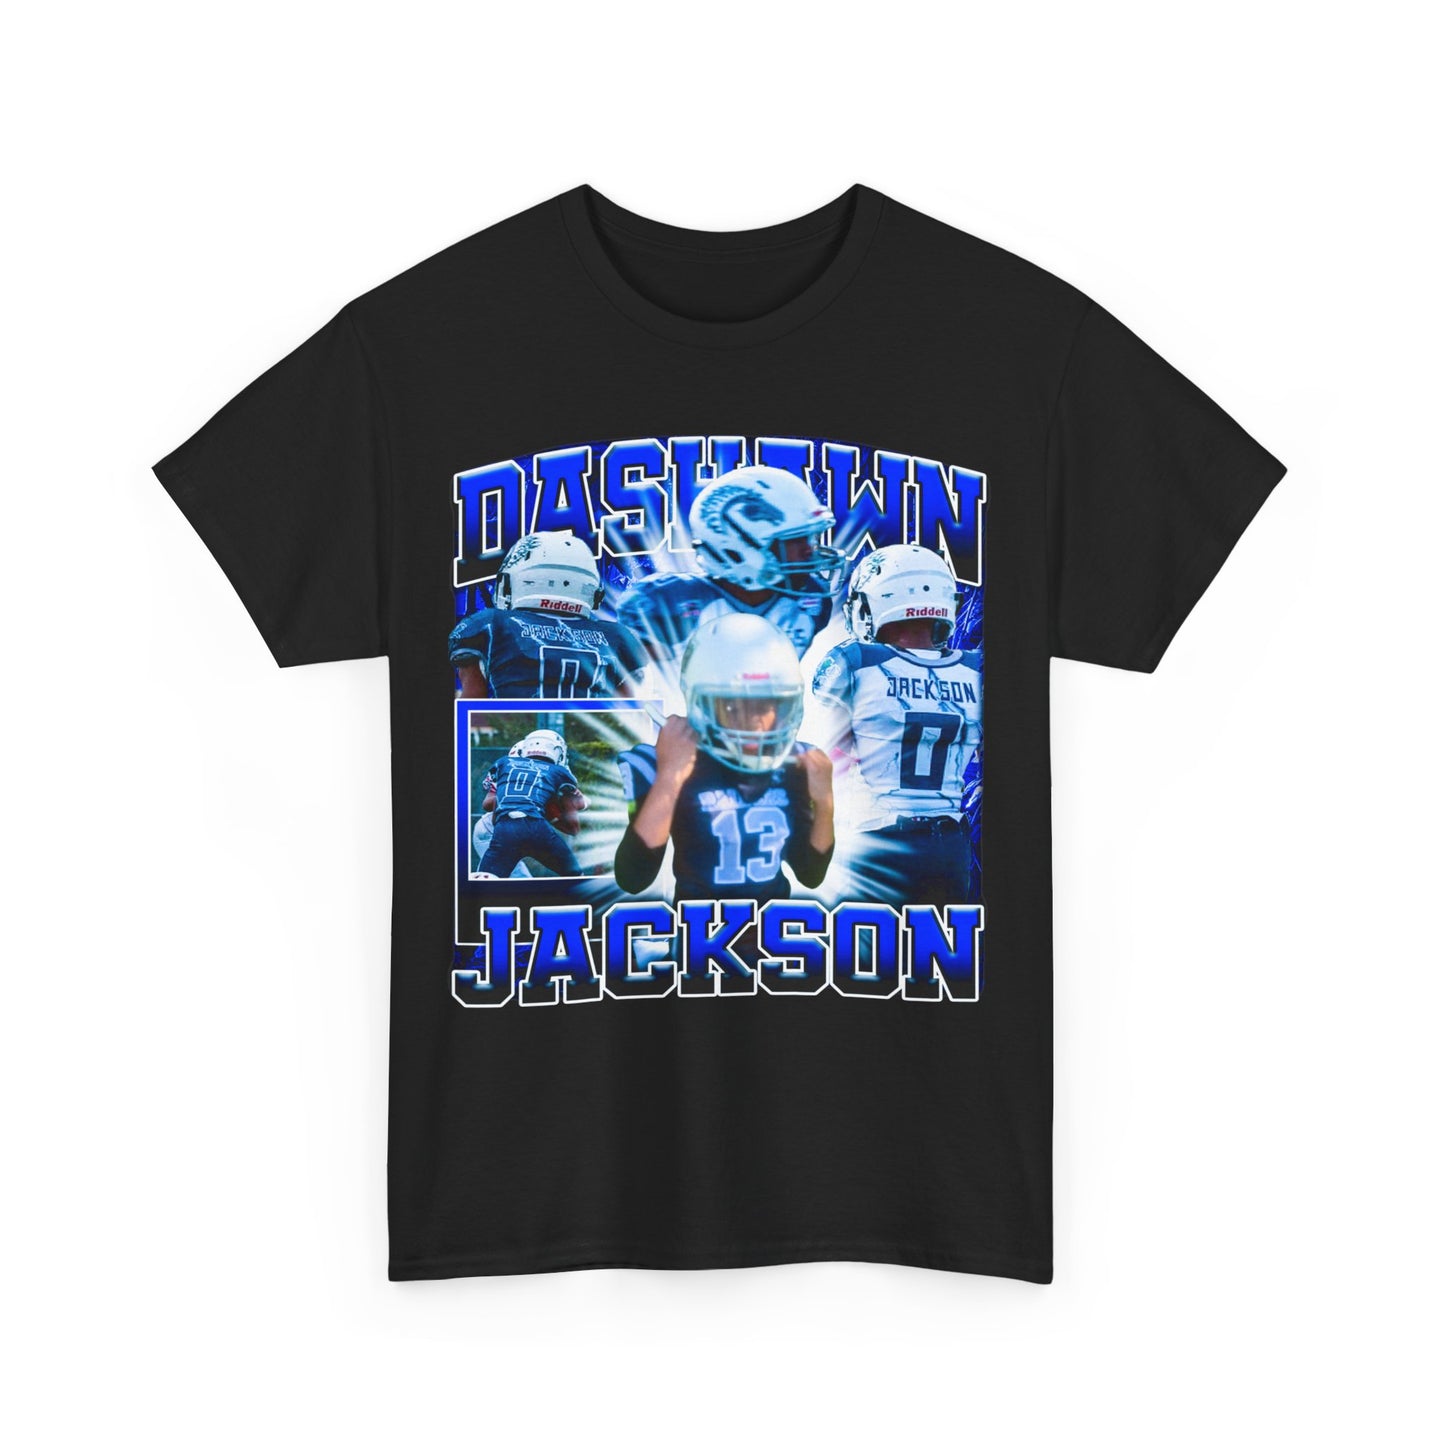 Dashawn Jackson Heavy Cotton Tee